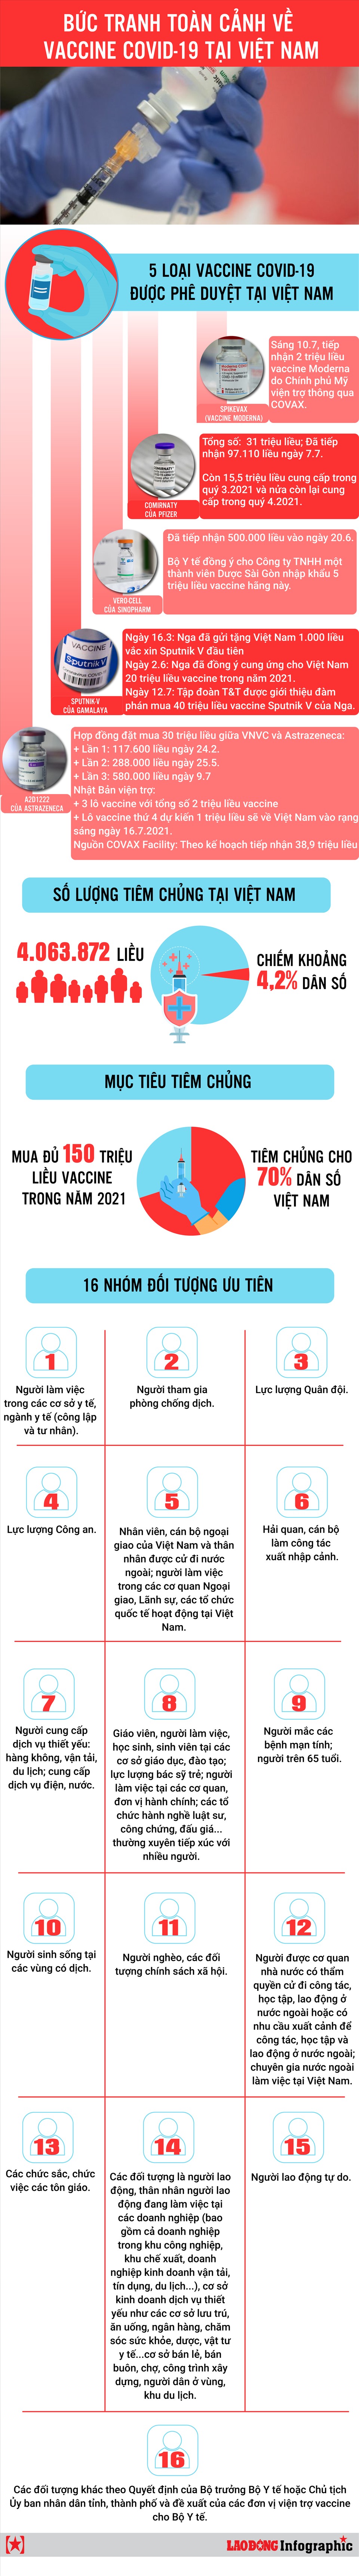 Bức tranh toàn cảnh về vaccine COVID-19 tại Việt Nam - 1